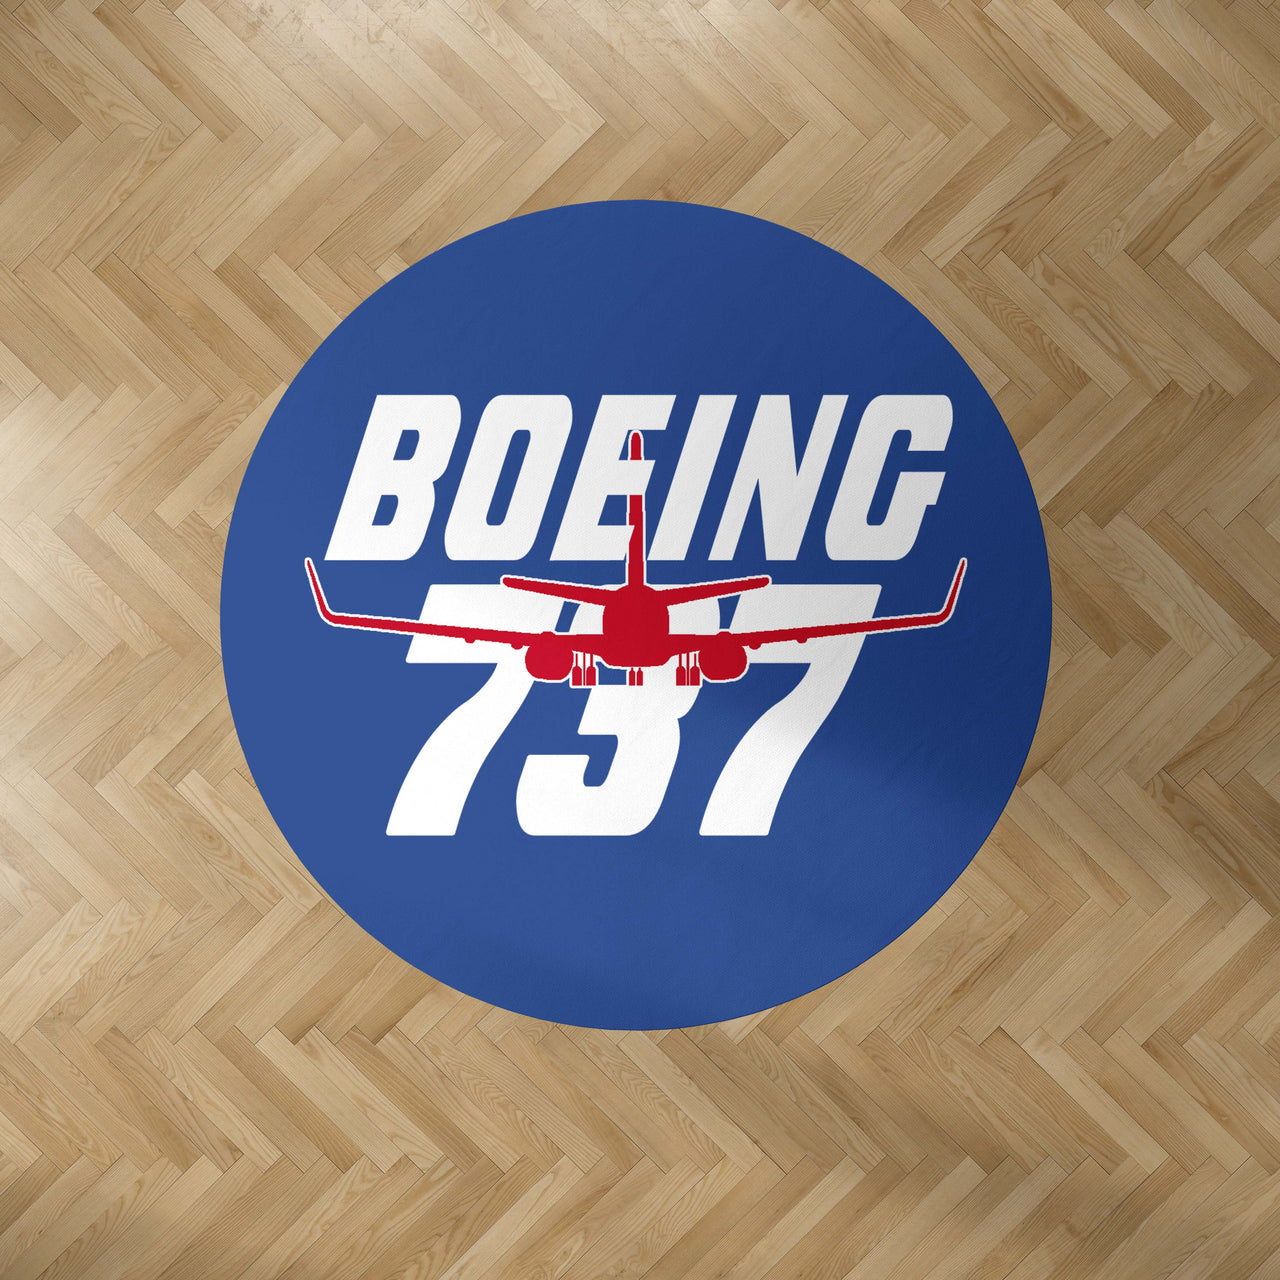 Amazing Boeing 737 Designed Carpet & Floor Mats (Round)